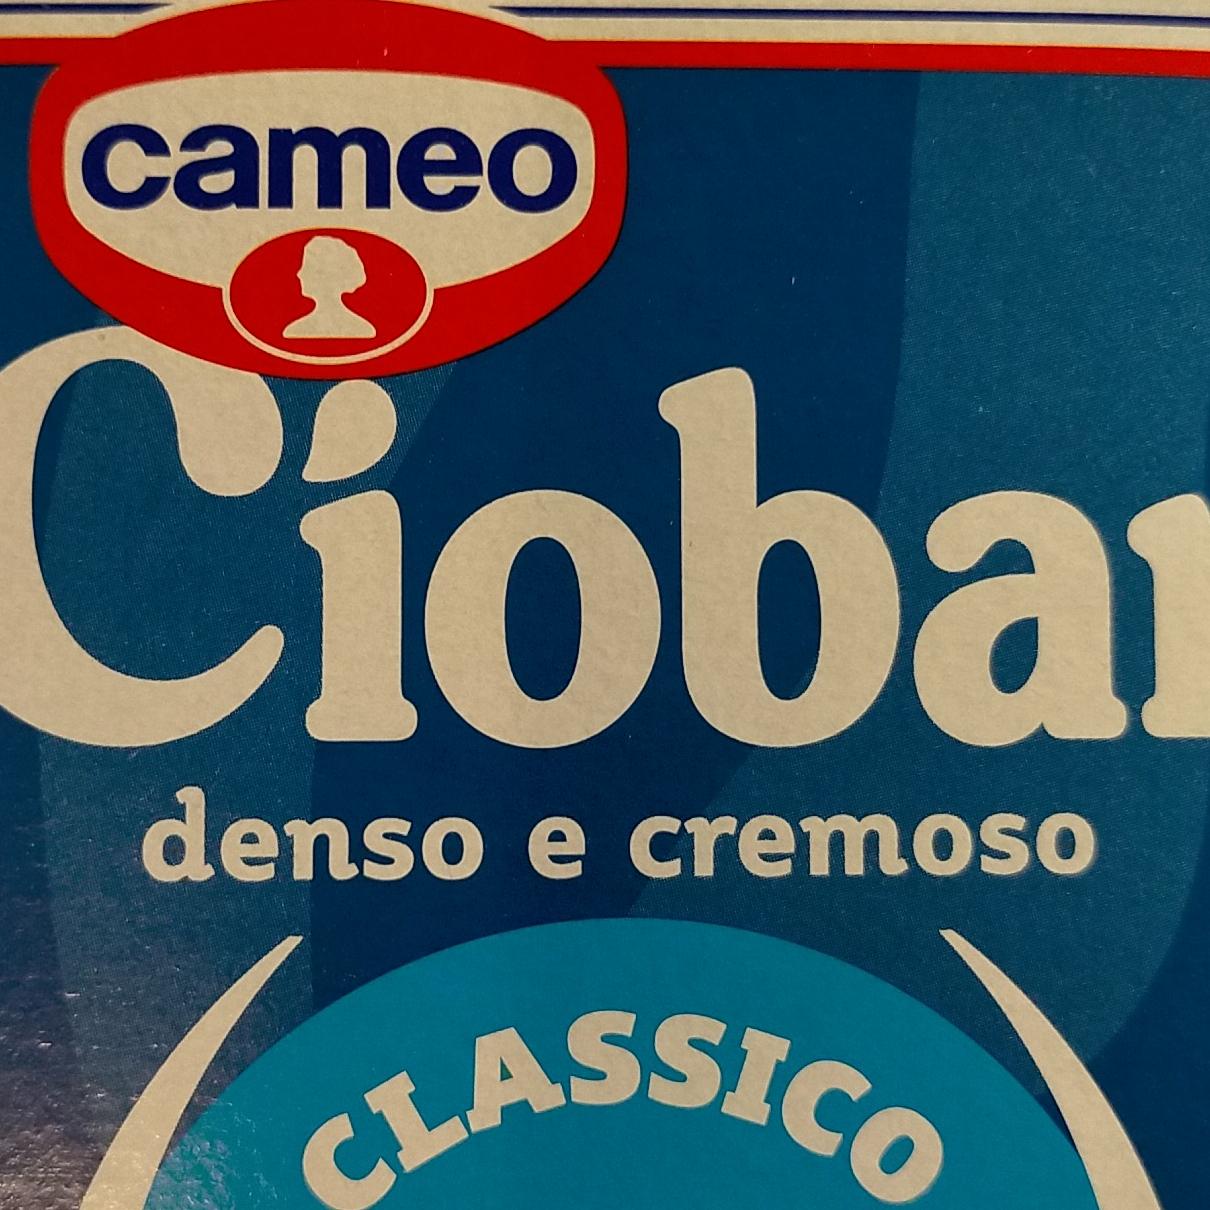 Fotografie - Ciobar denso e cremoso Classico Cameo